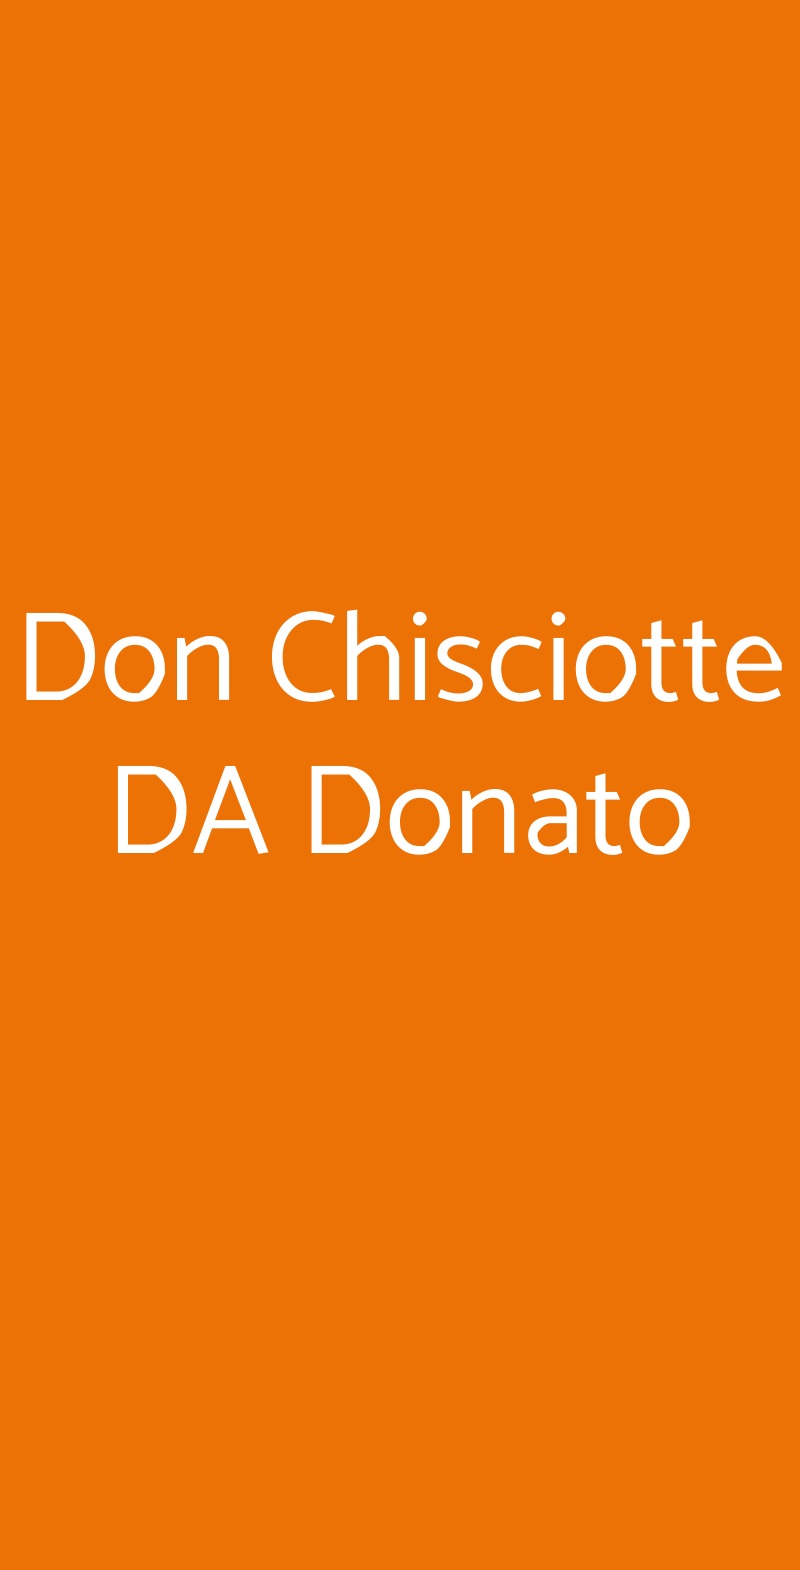 Don Chisciotte DA Donato Bologna menù 1 pagina